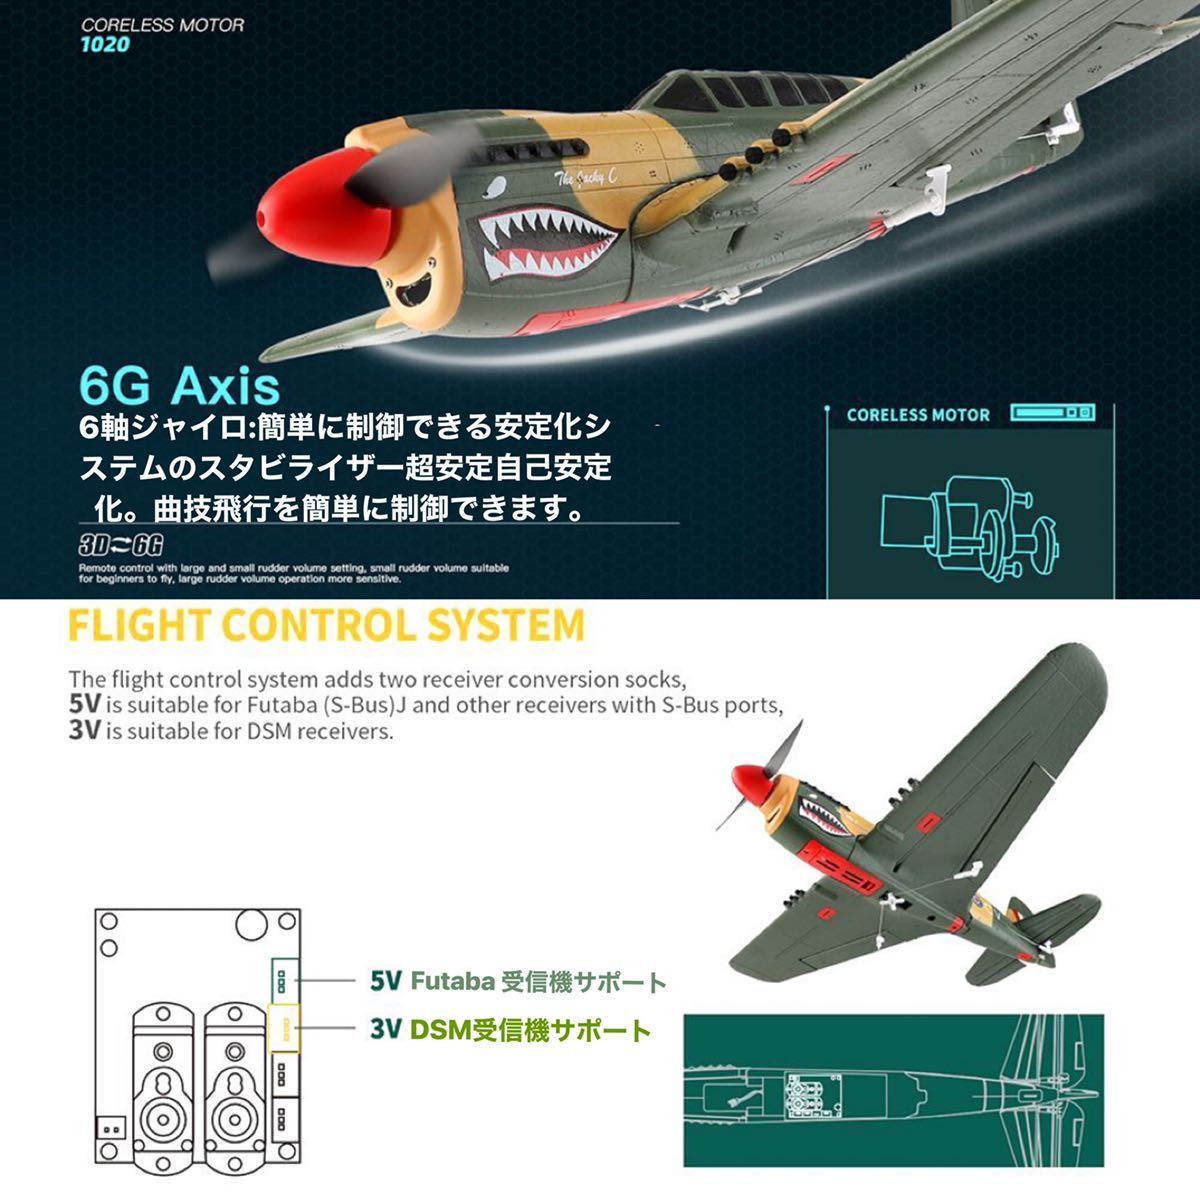 モード1送信機付き 即飛行 XK A220 P40戦闘機 Futaba DSM拡張付き マイクロスケール飛行機 3D/6G切替 wltoys 4CH 2.4G RC ラジコンプレーン